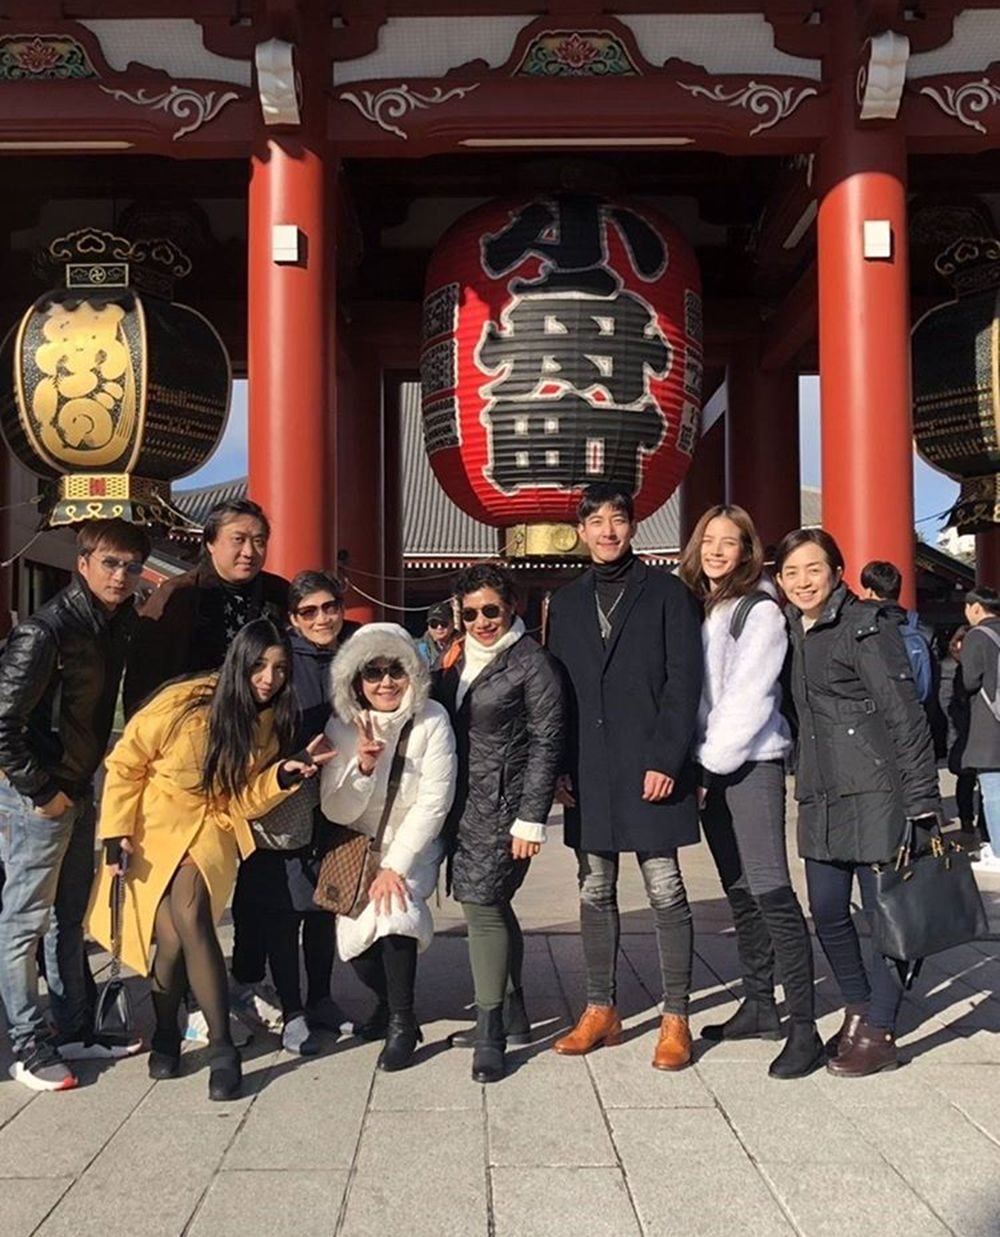 โตโน่-ณิชา พาสองครอบครัวเที่ยวญี่ปุ่น